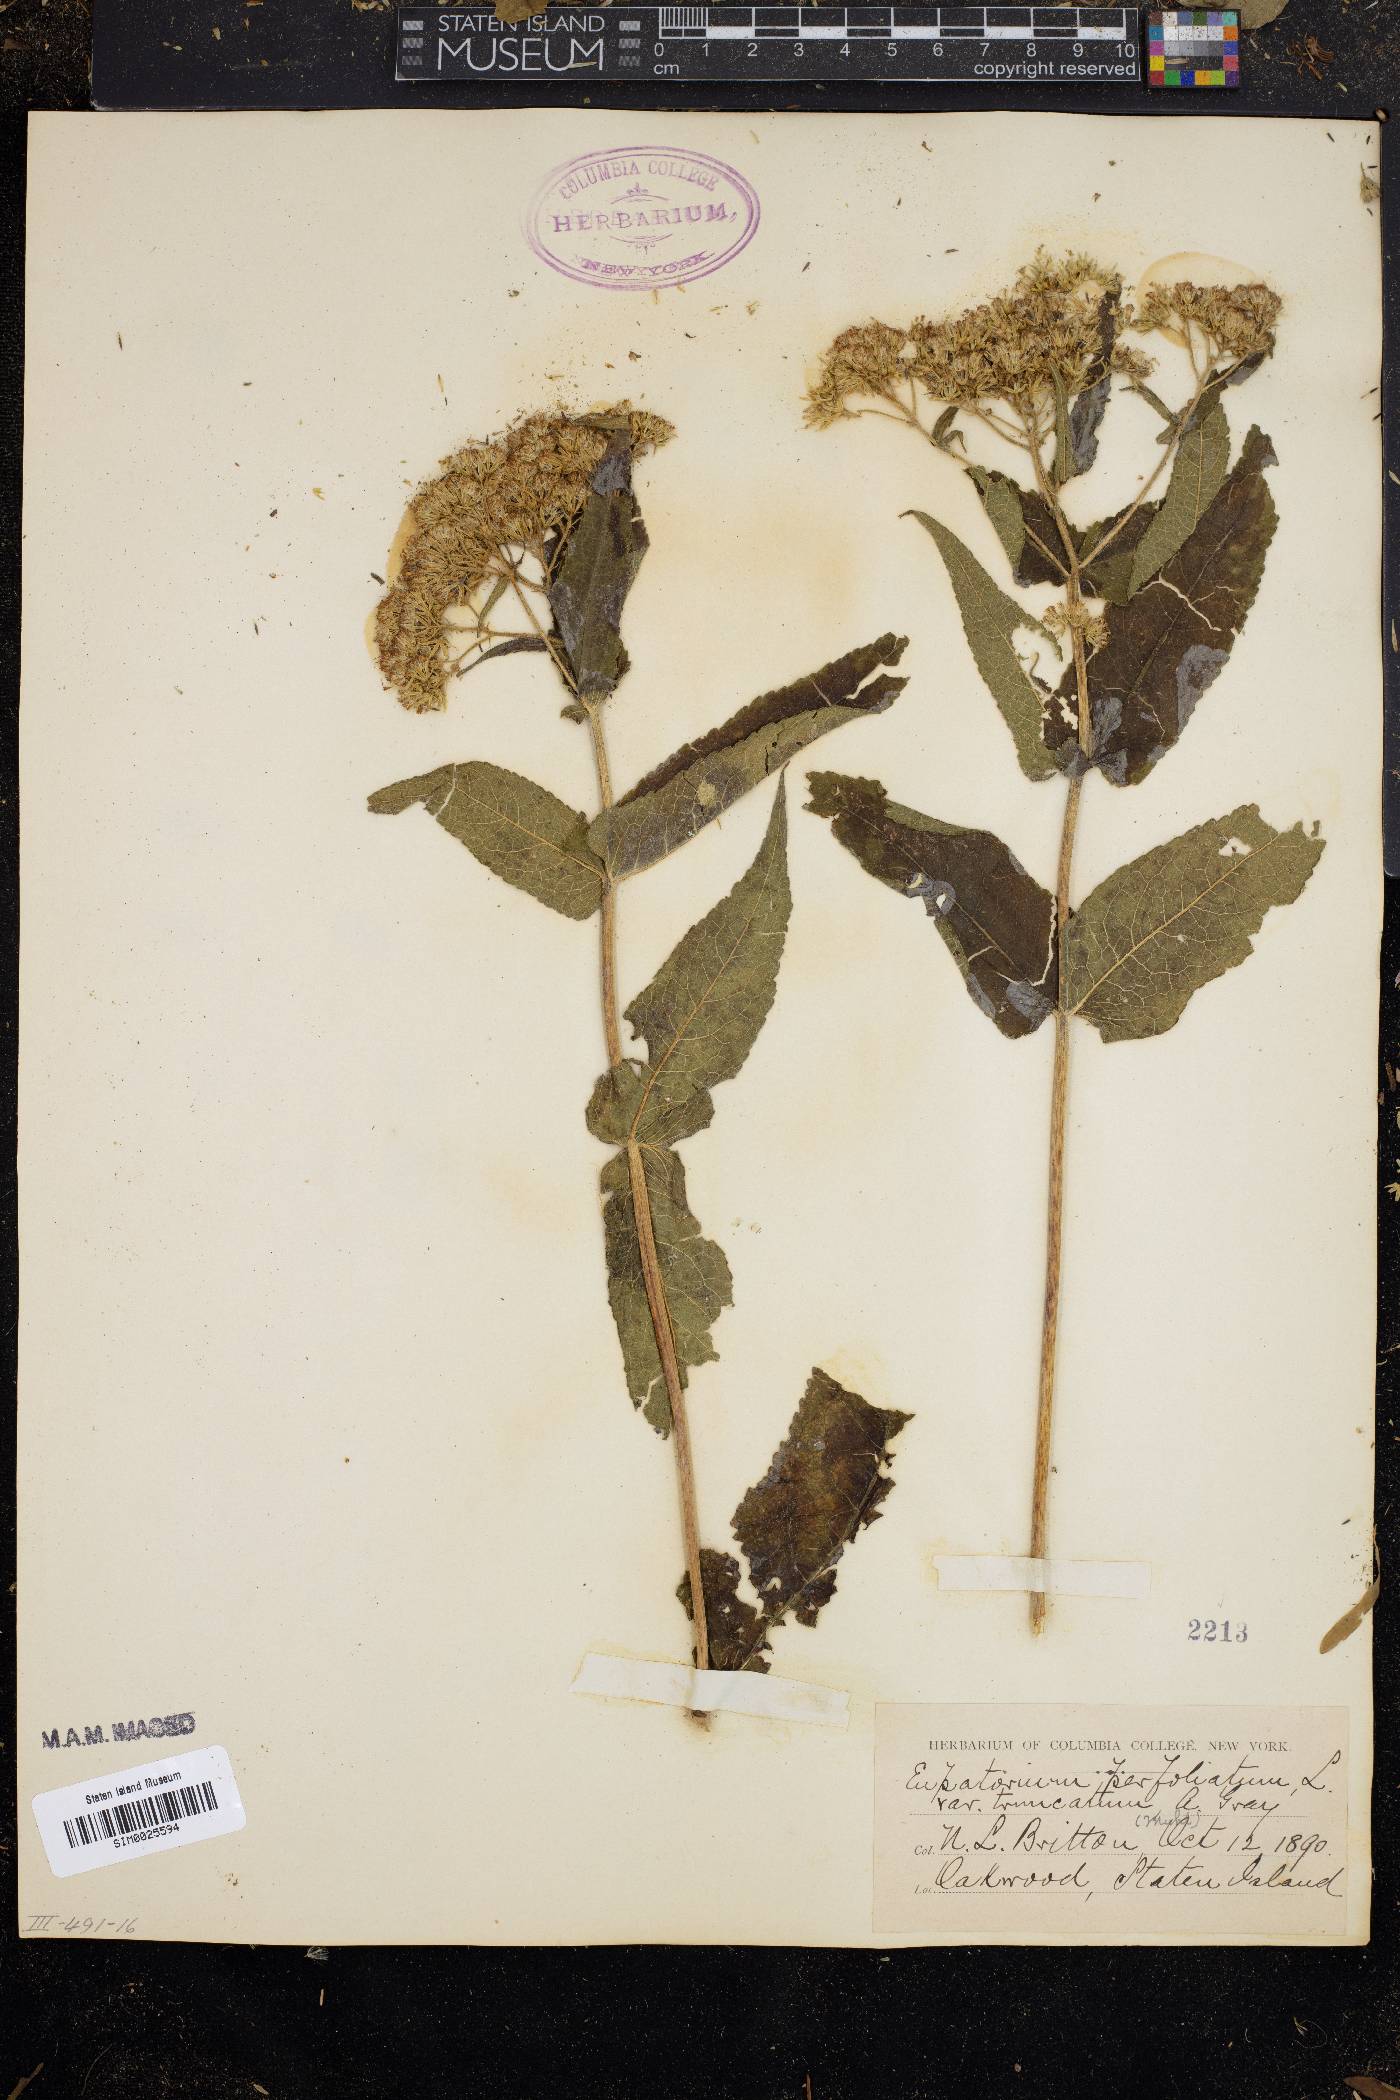 Eupatorium perfoliatum var. truncatum image